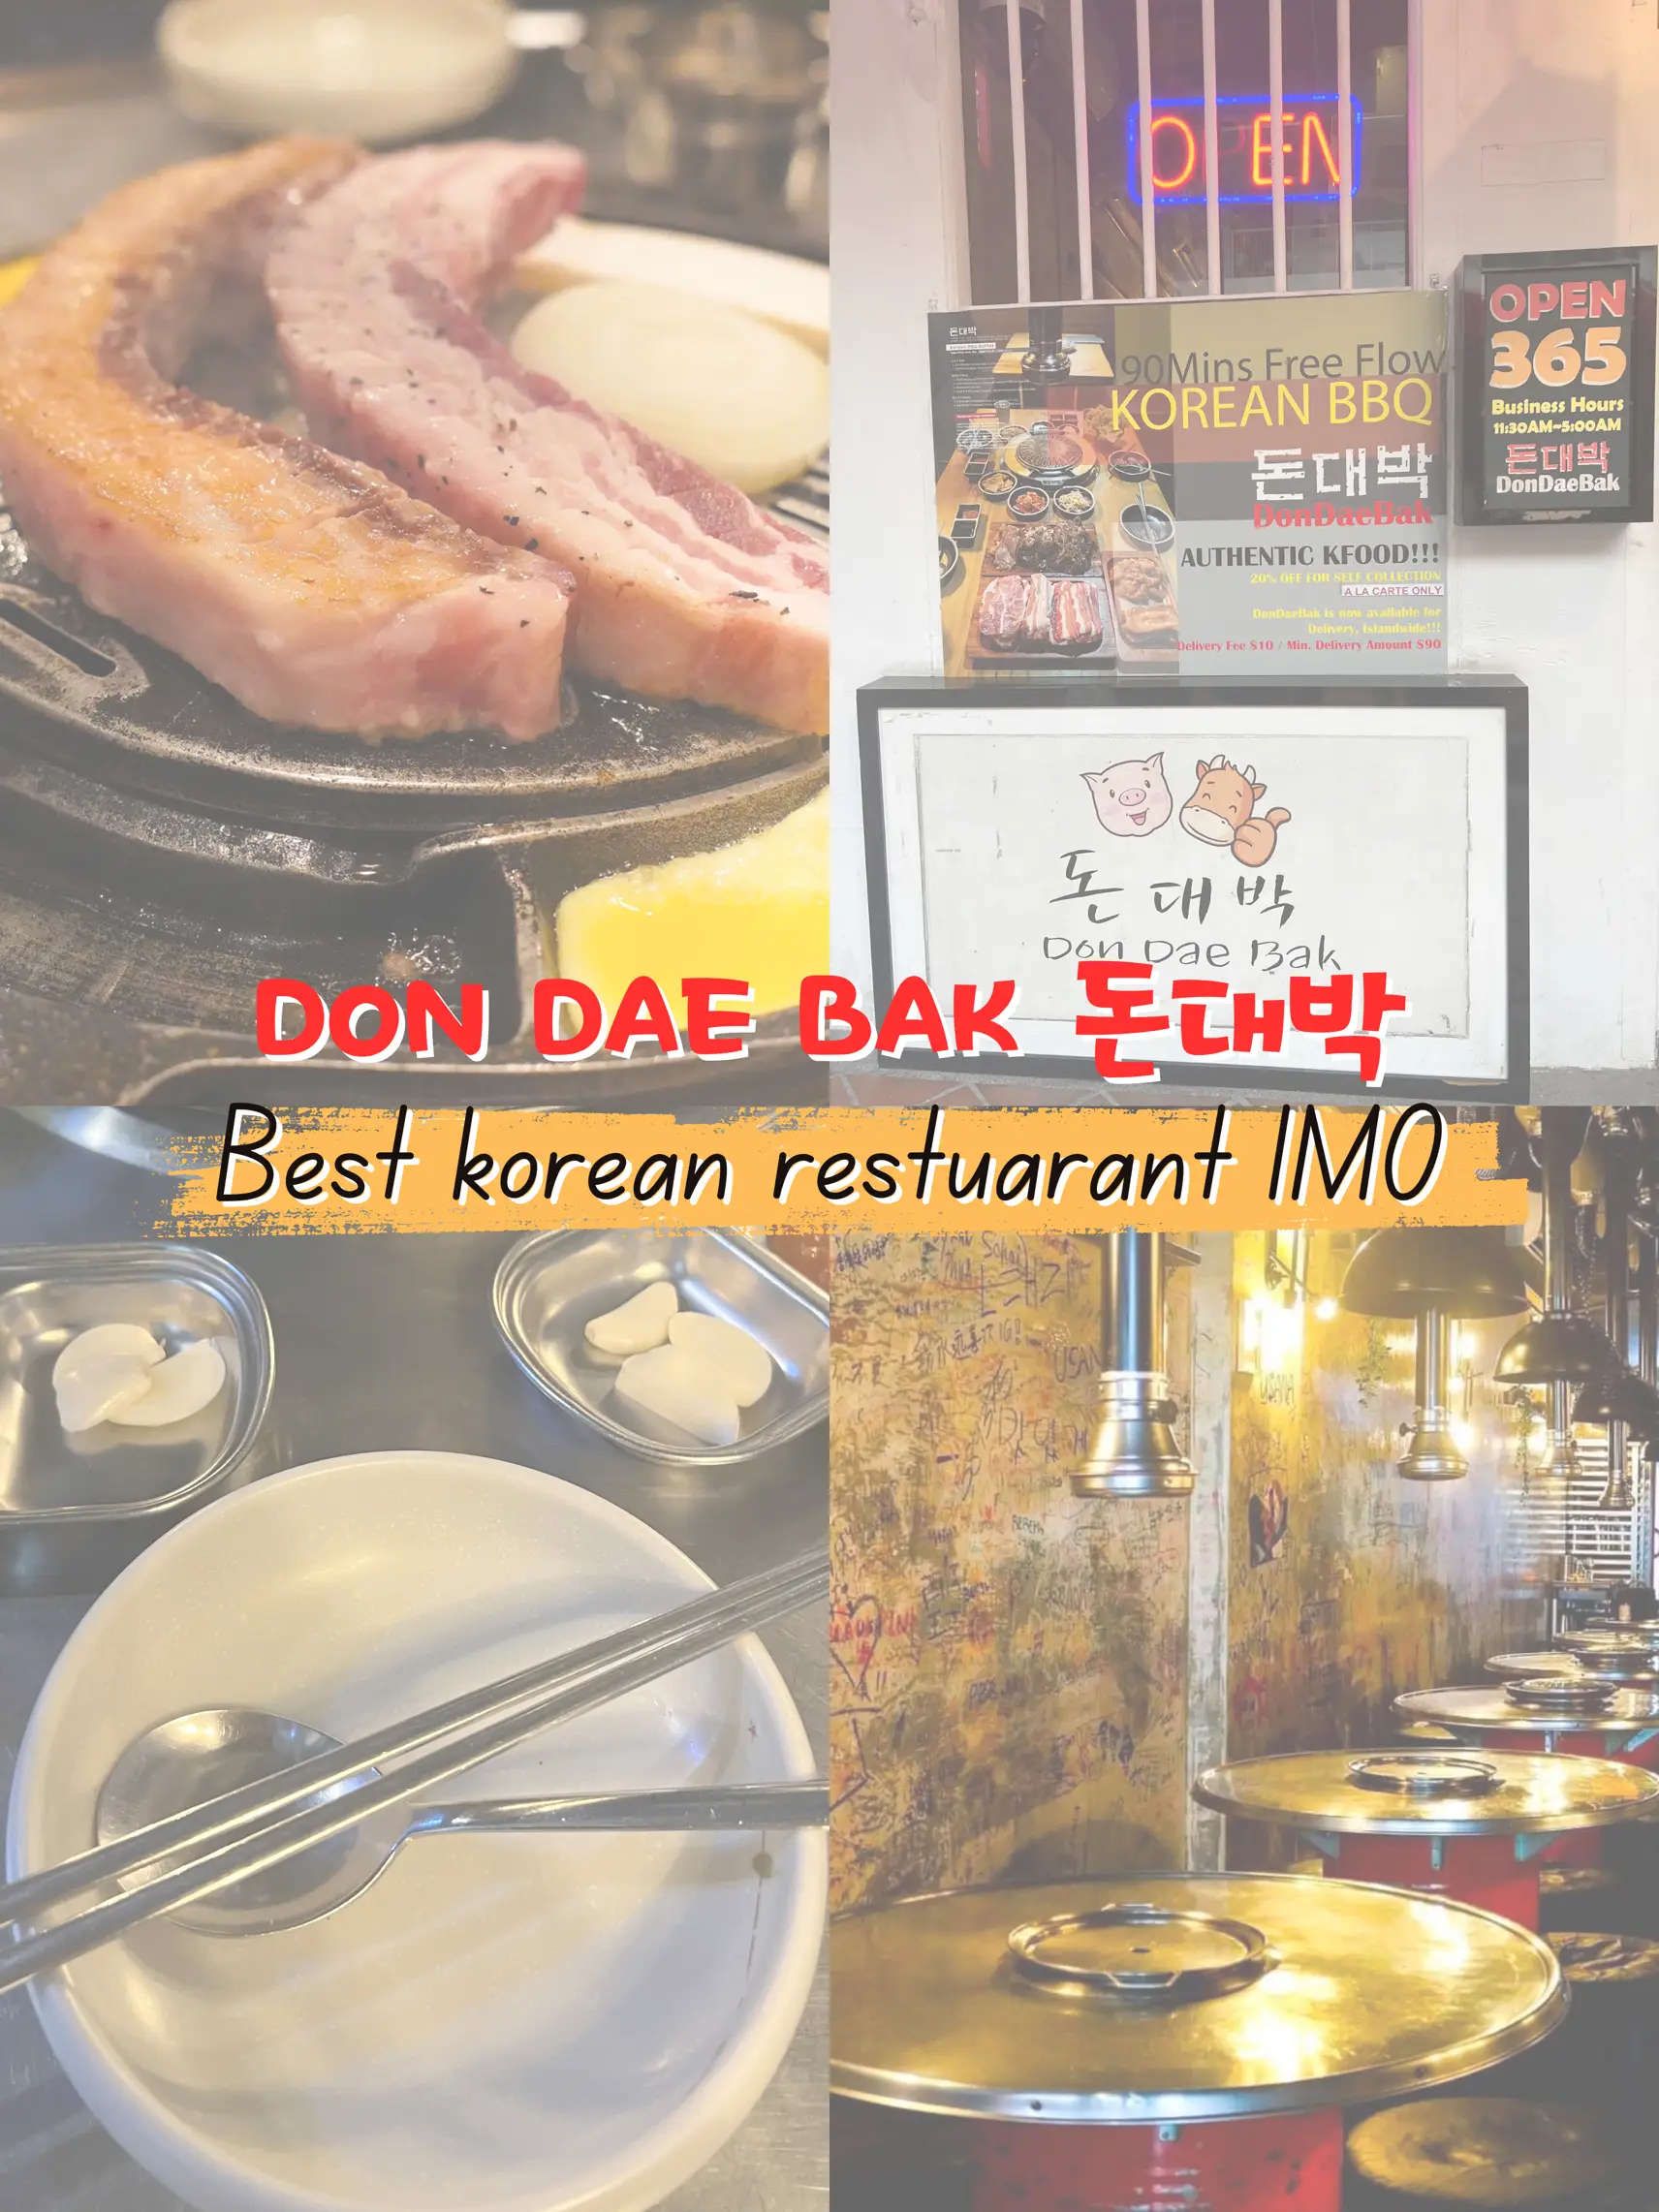 Best Korean restaurant in SG's images